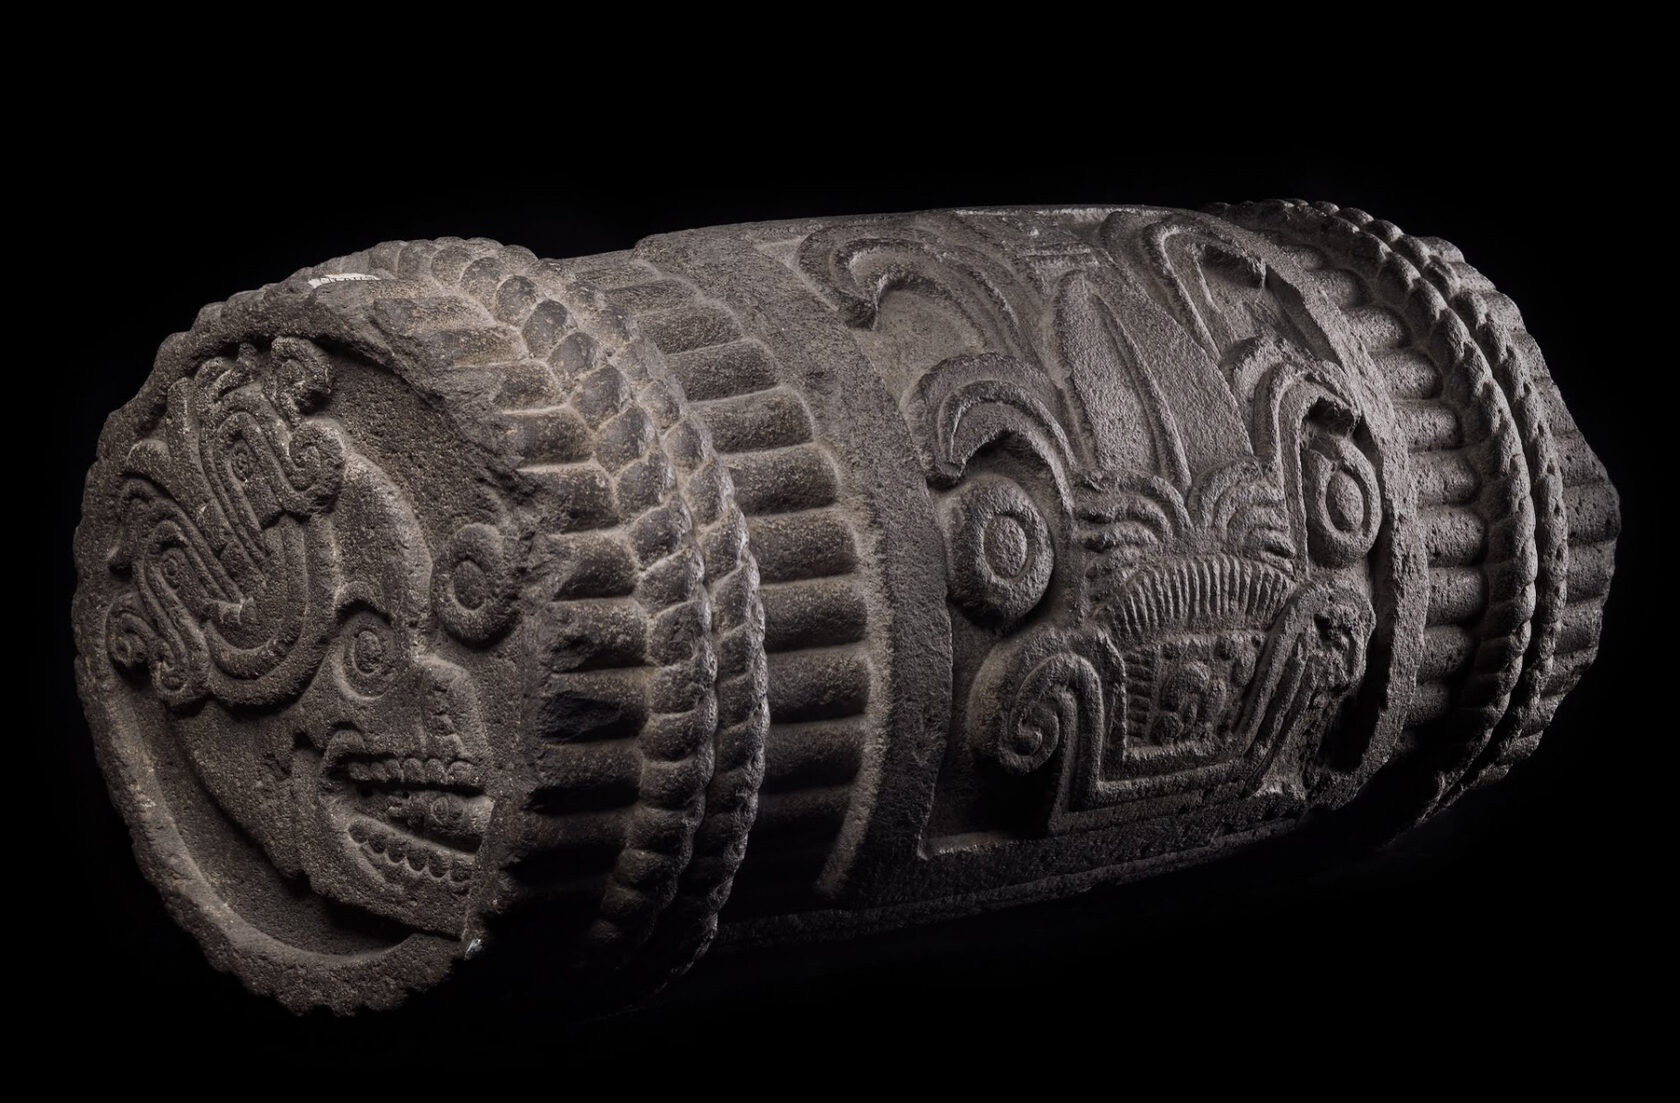 Символическая связка тростника. Ацтеки, 1507 г. н.э. Коллекция Museo Nacional de Antropología, México.